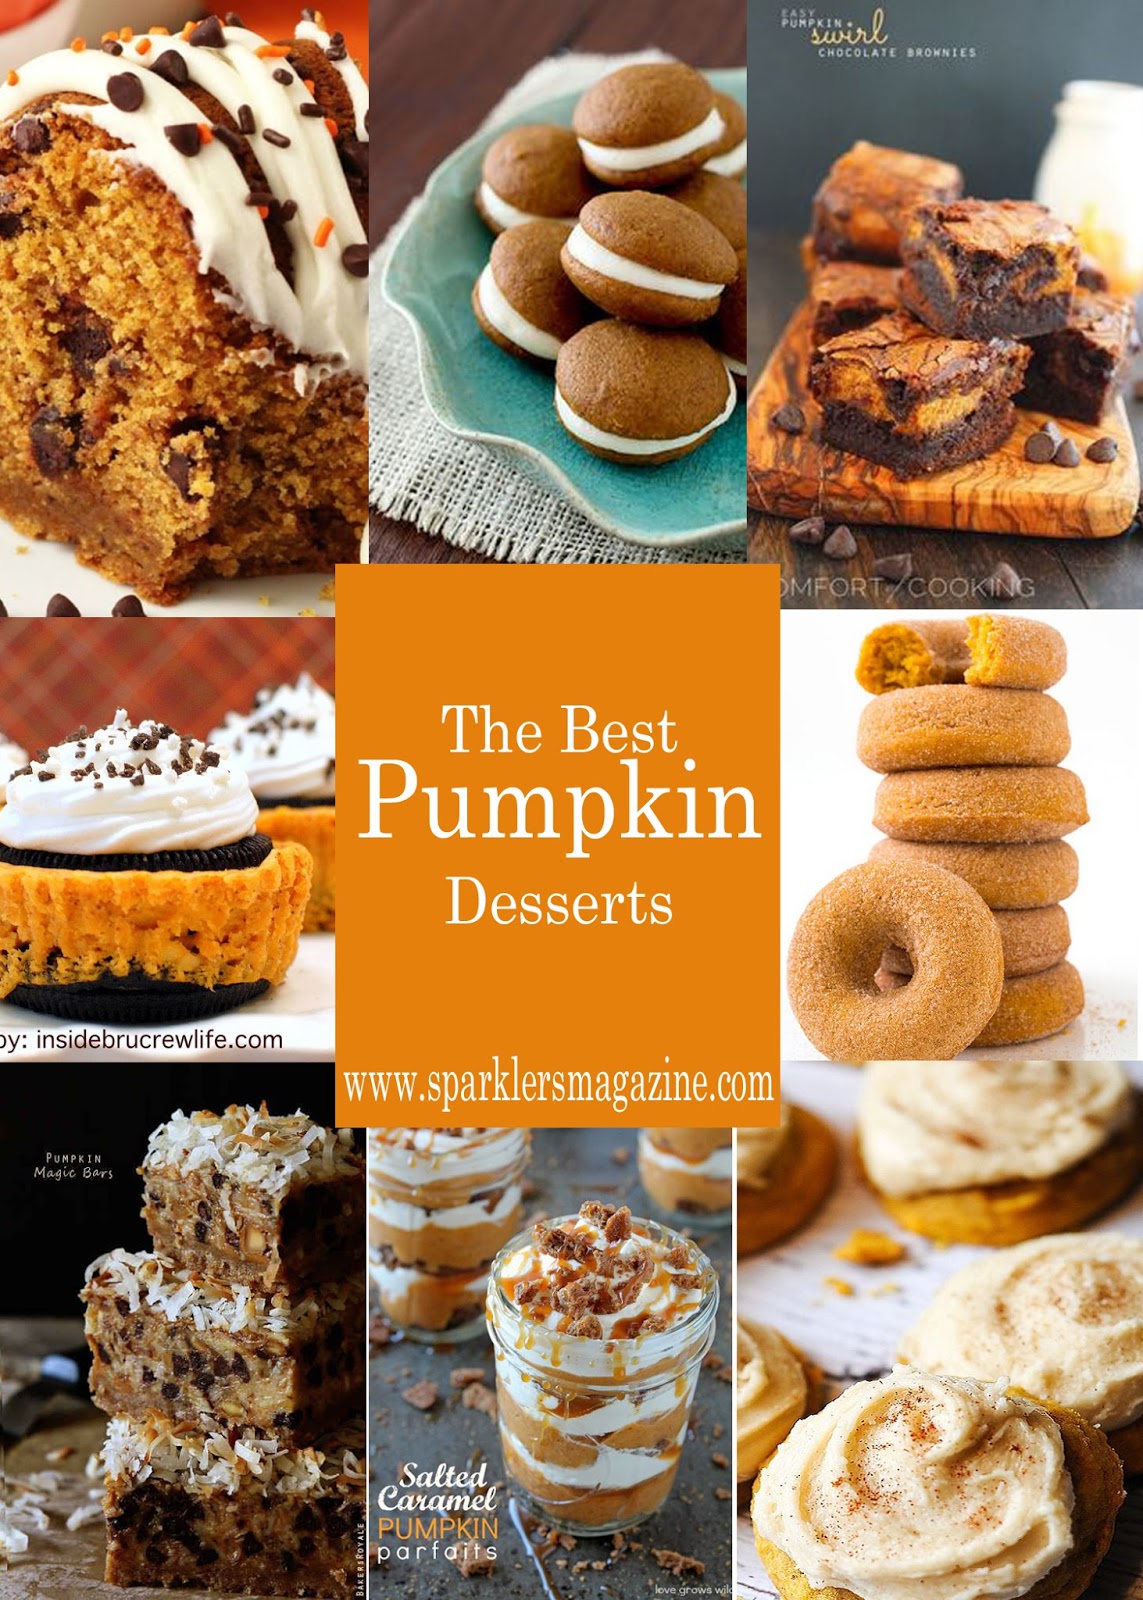 Sparklers Magazine: Top Pumpkin Desserts